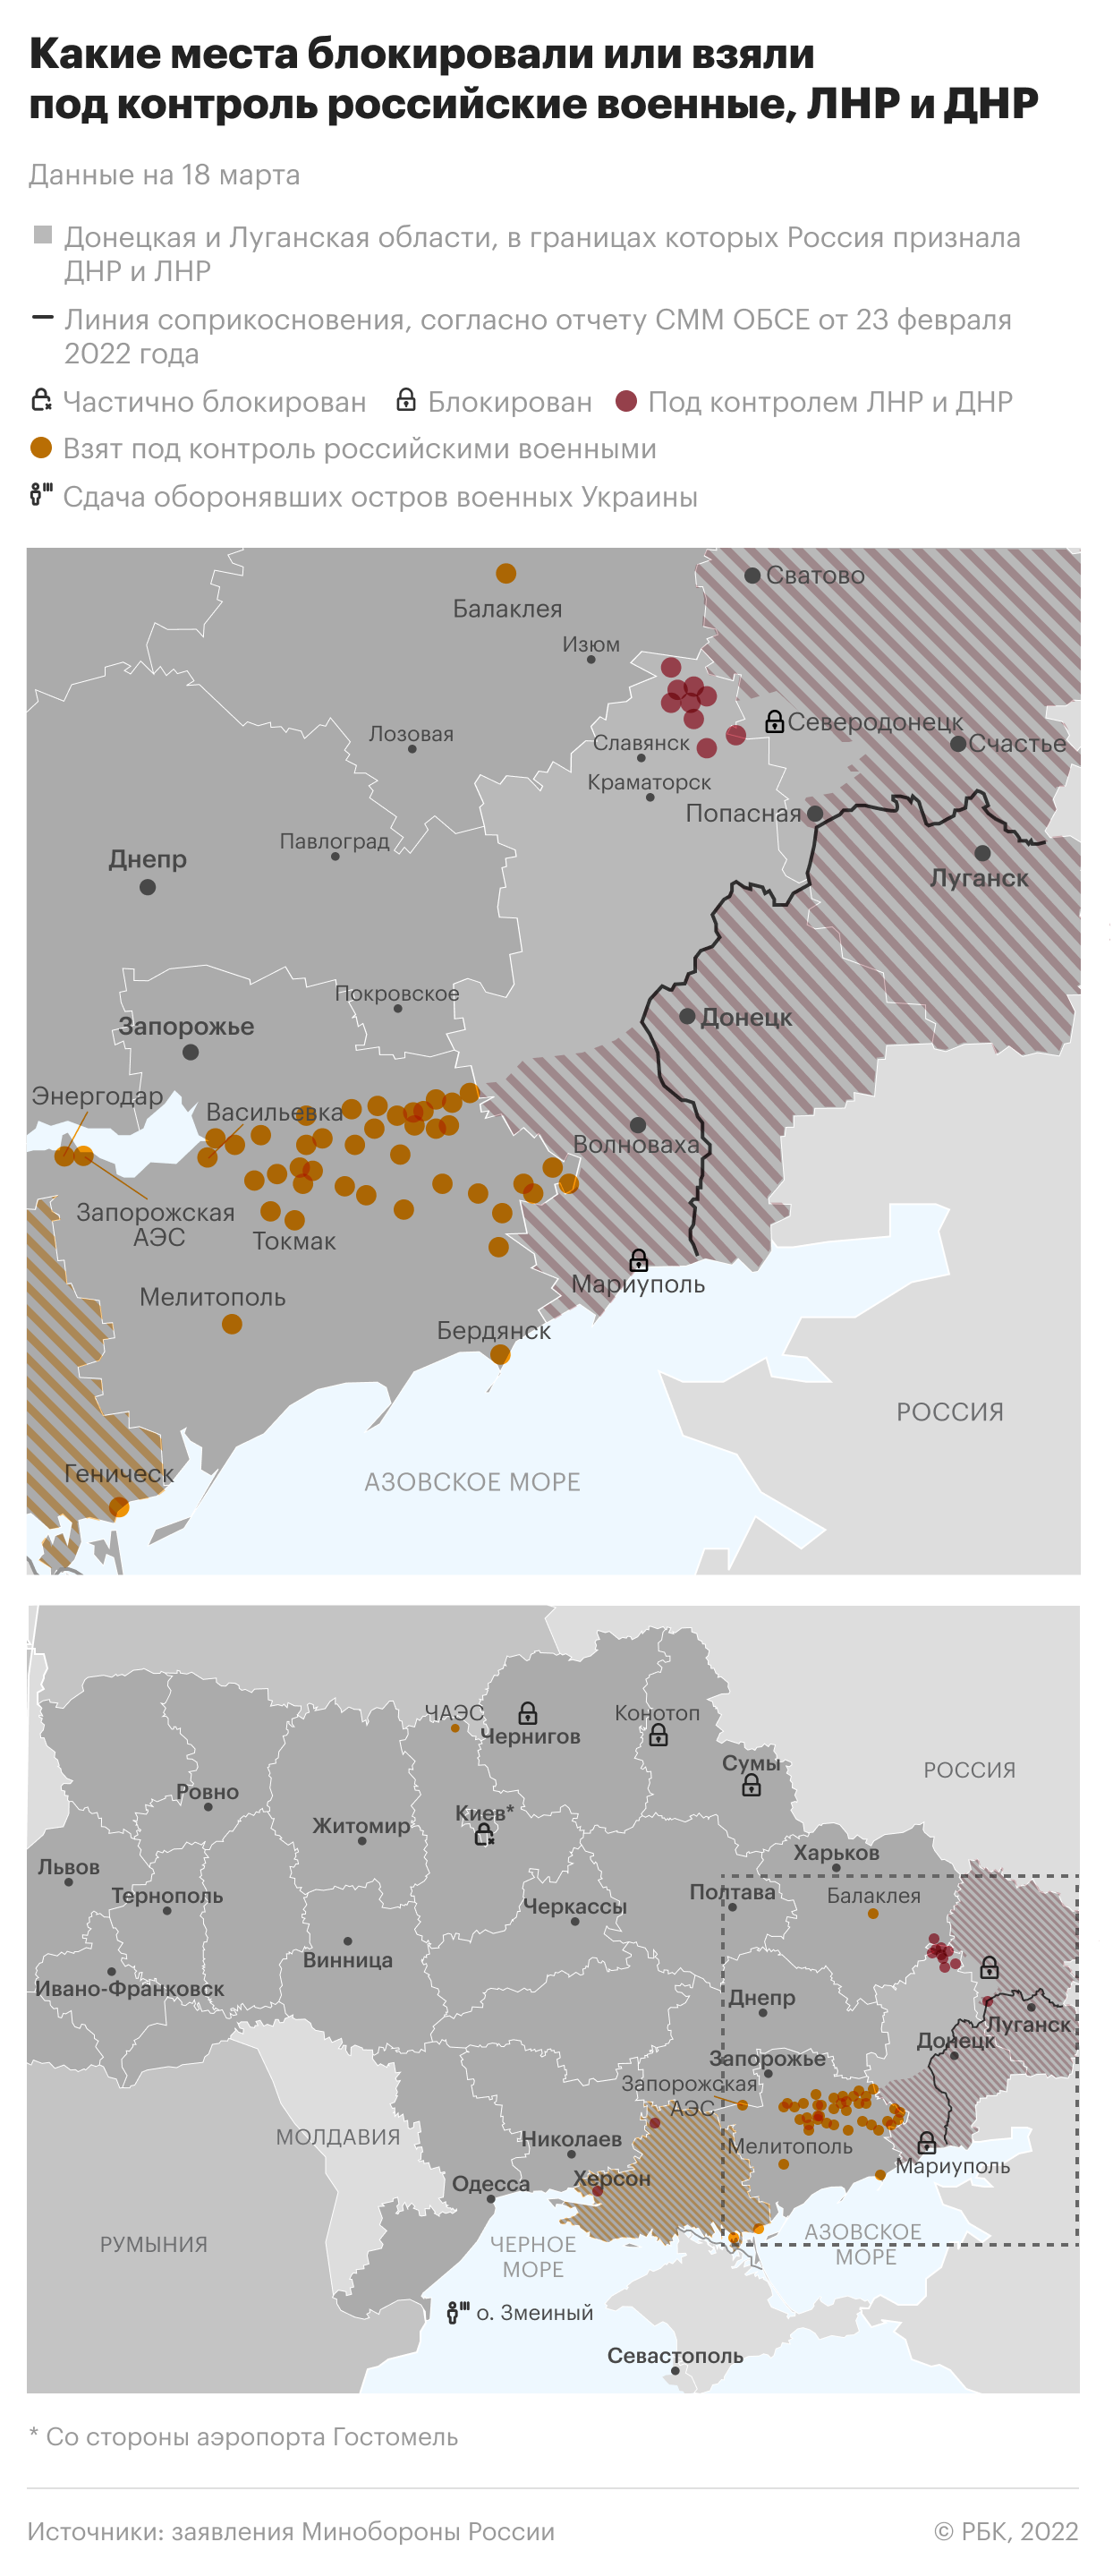 ООН сообщила о 925 убитых и почти 1,5 тыс. раненых мирных жителей Украины"/>













